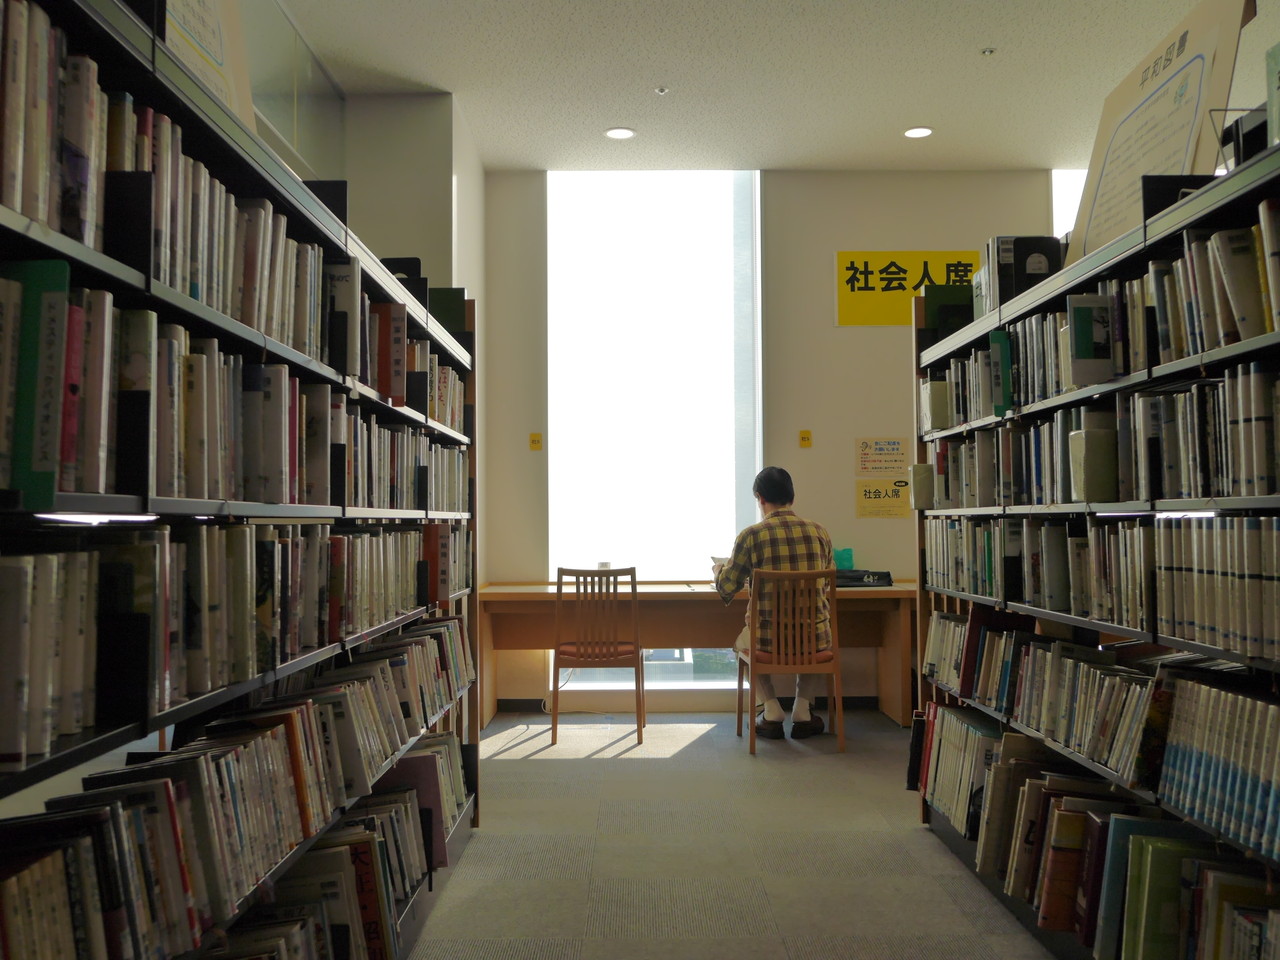 浦和パルコの超巨大図書館 さいたま市中央図書館を徹底解説 閲覧席豊富で勉強に最適 浦和裏日記 さいたま市の地域ブログ